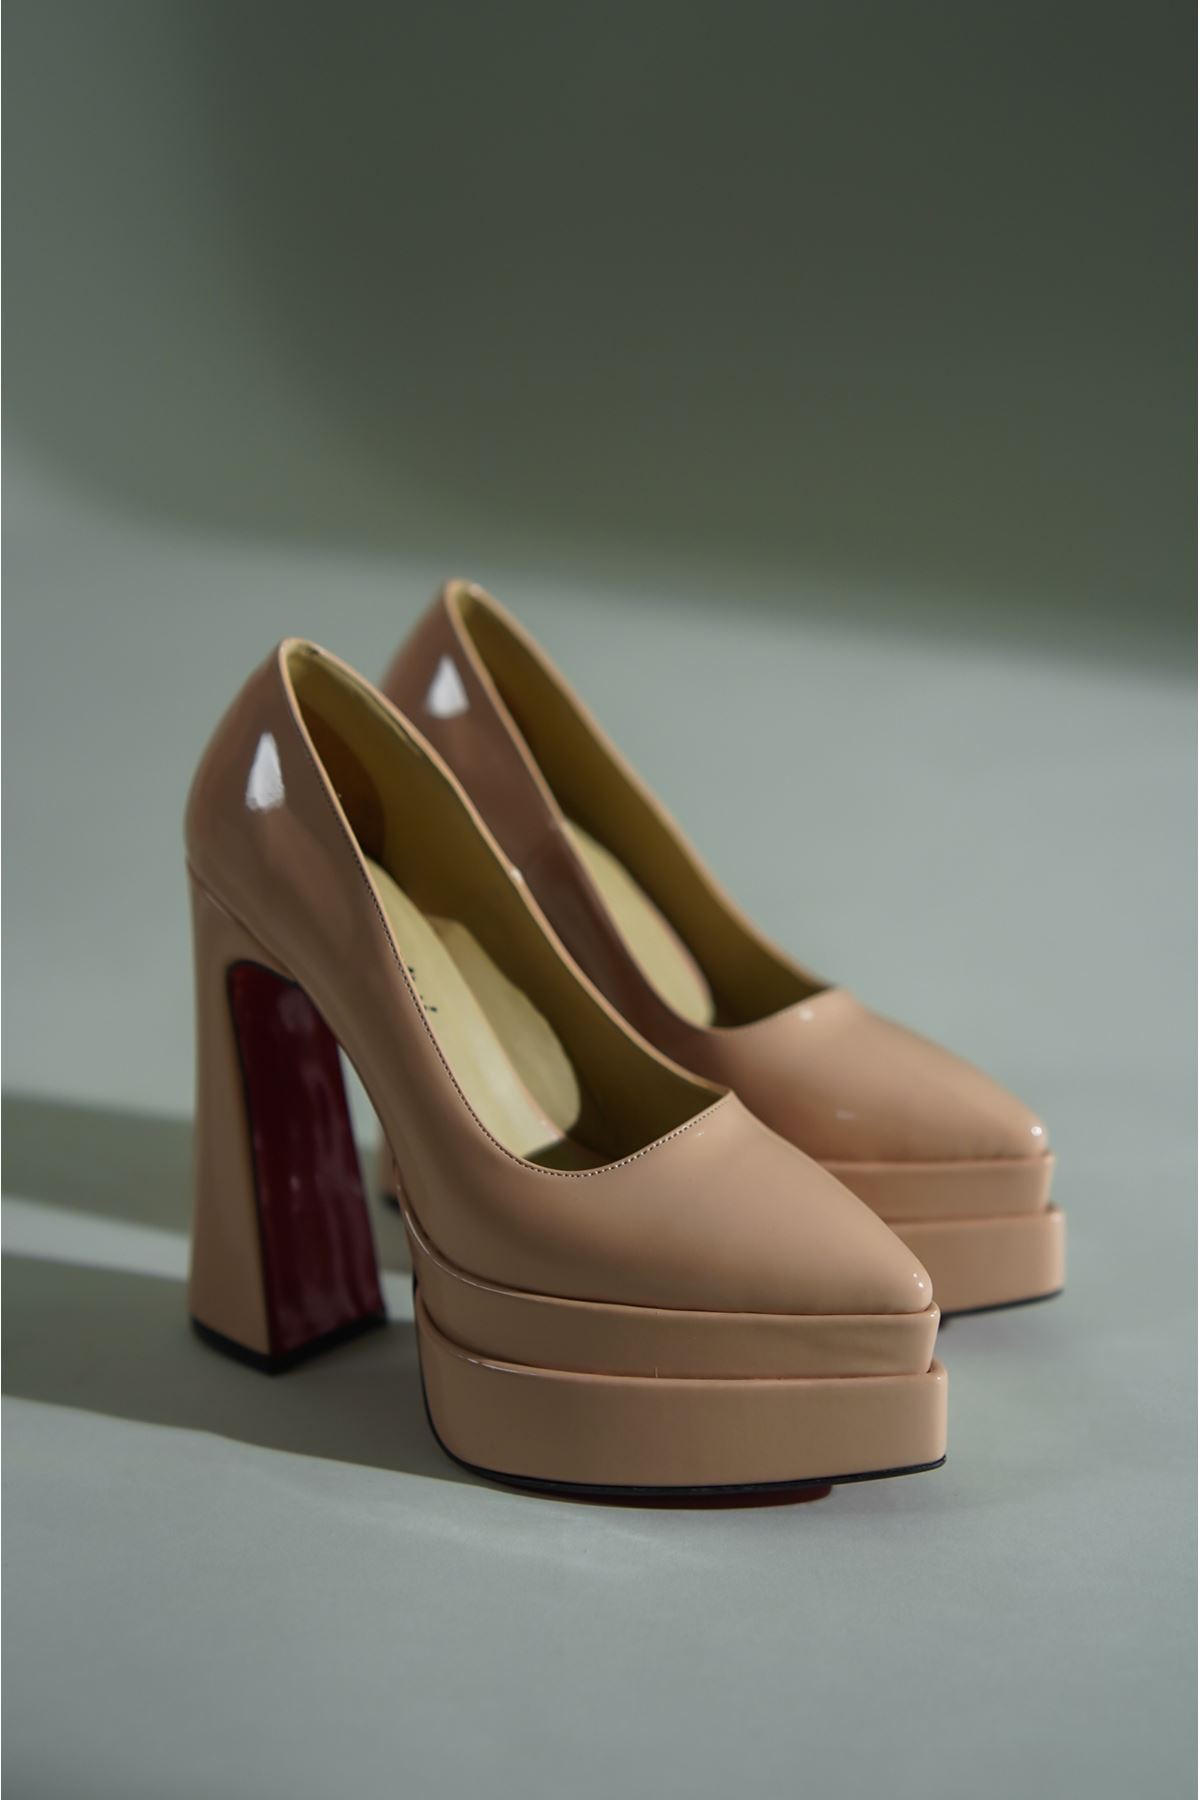 Nude Çift Platform Özel Tasarım Kadın Ayakkabı Rigel